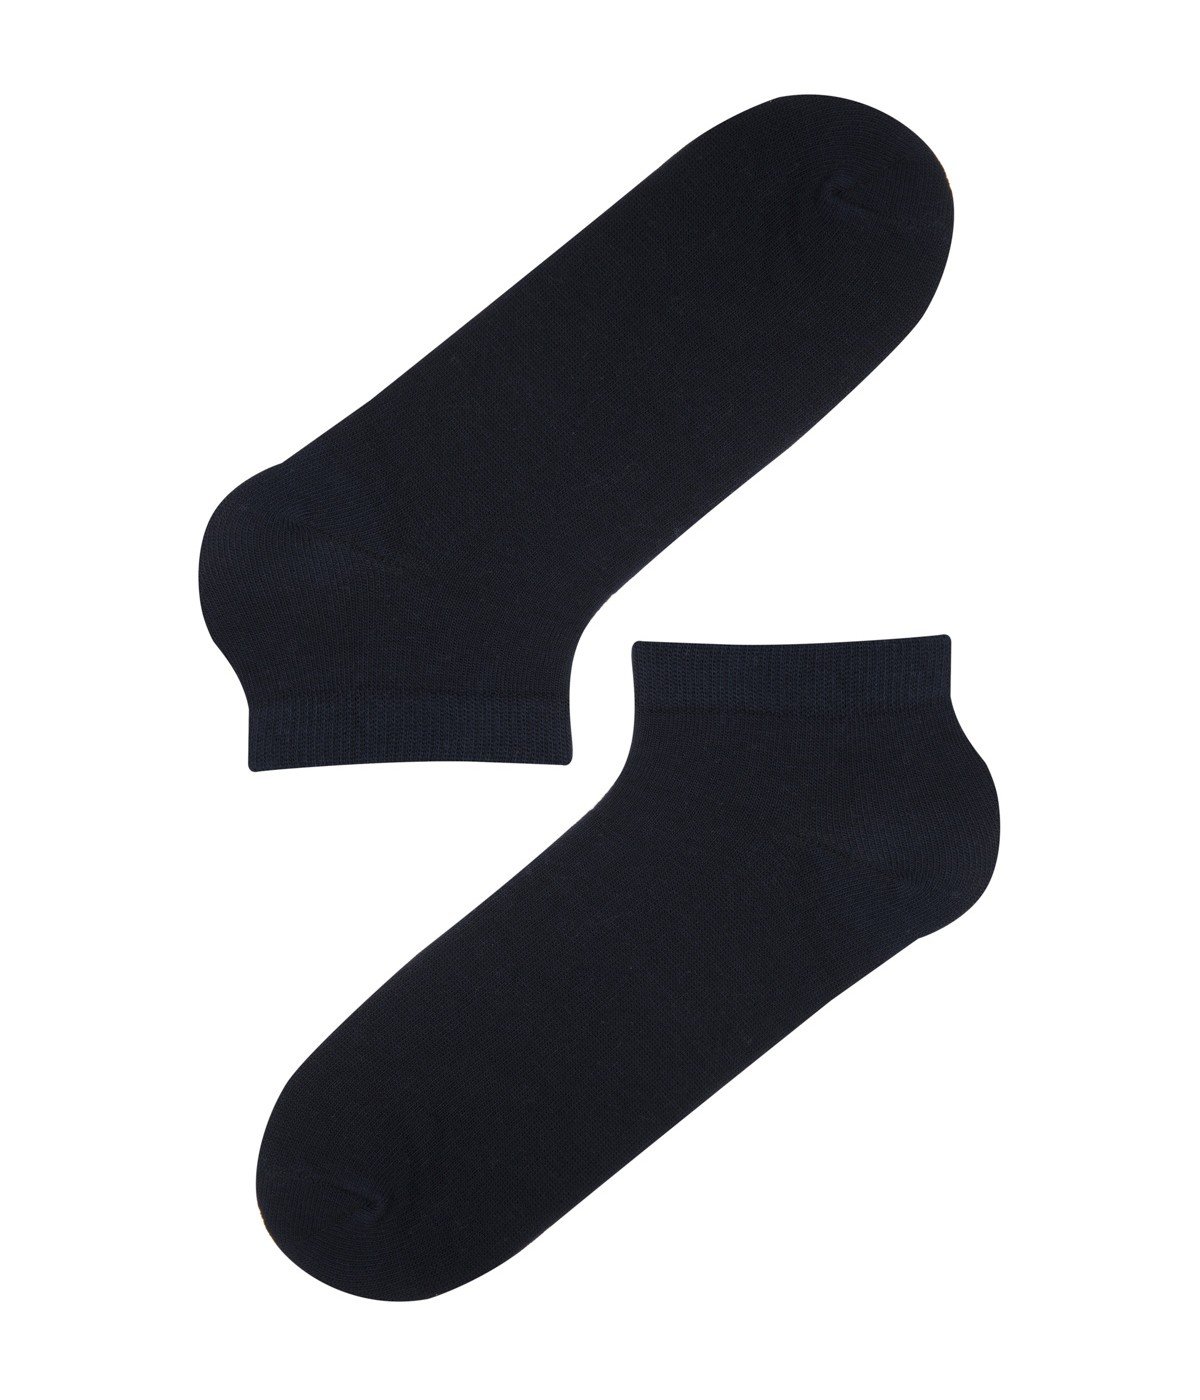 Simple 4 In 1 Socks